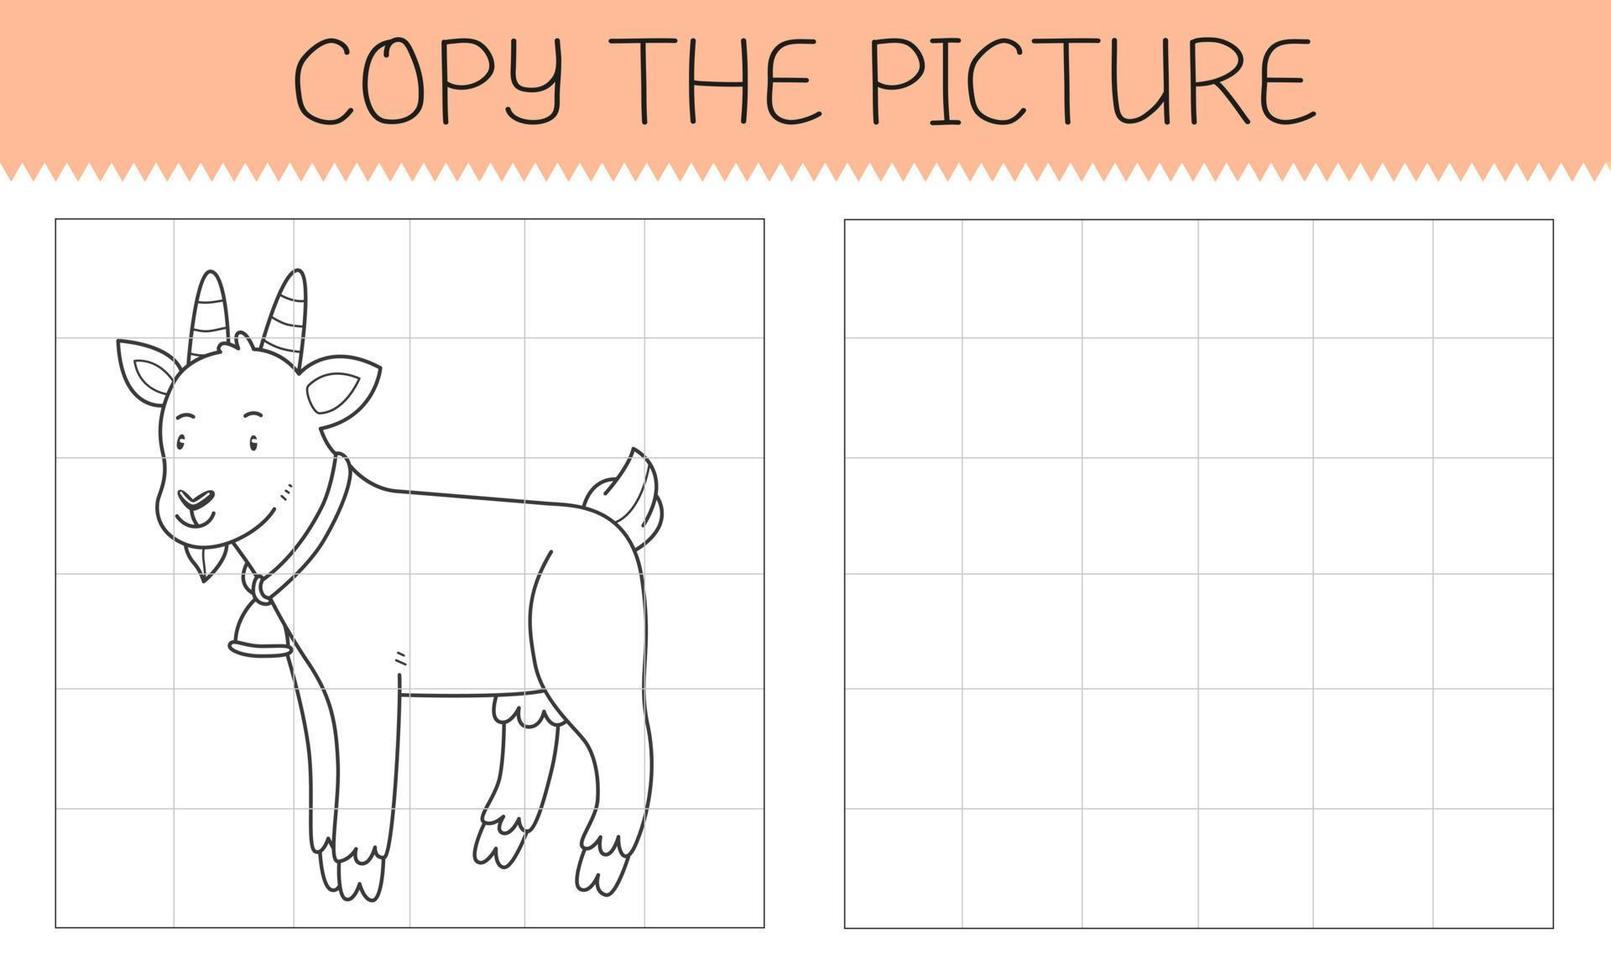 Desenhos animados kawaii cachorro página para colorir imagem vetorial de  izakowski© 27993369